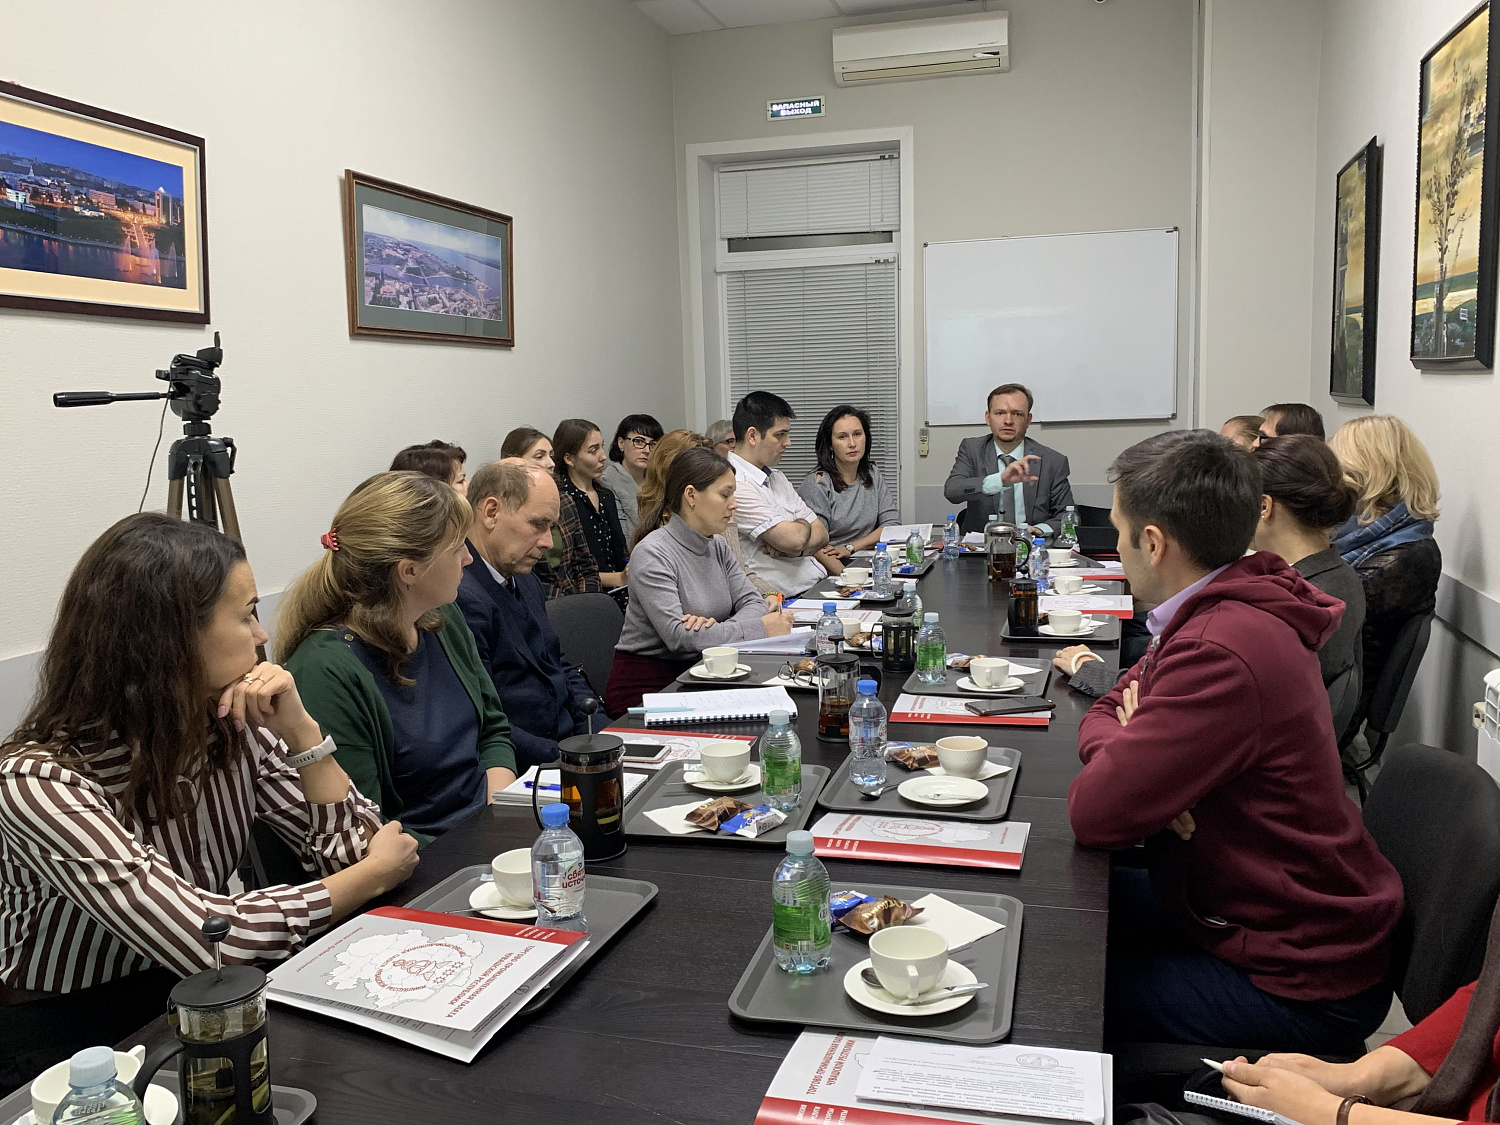 30 ноября 2021 года в ТПП Чувашской Республики в рамках XVII Межрегионального форума «Стратегия и практика успешного бизнеса» состоялся круглый стол